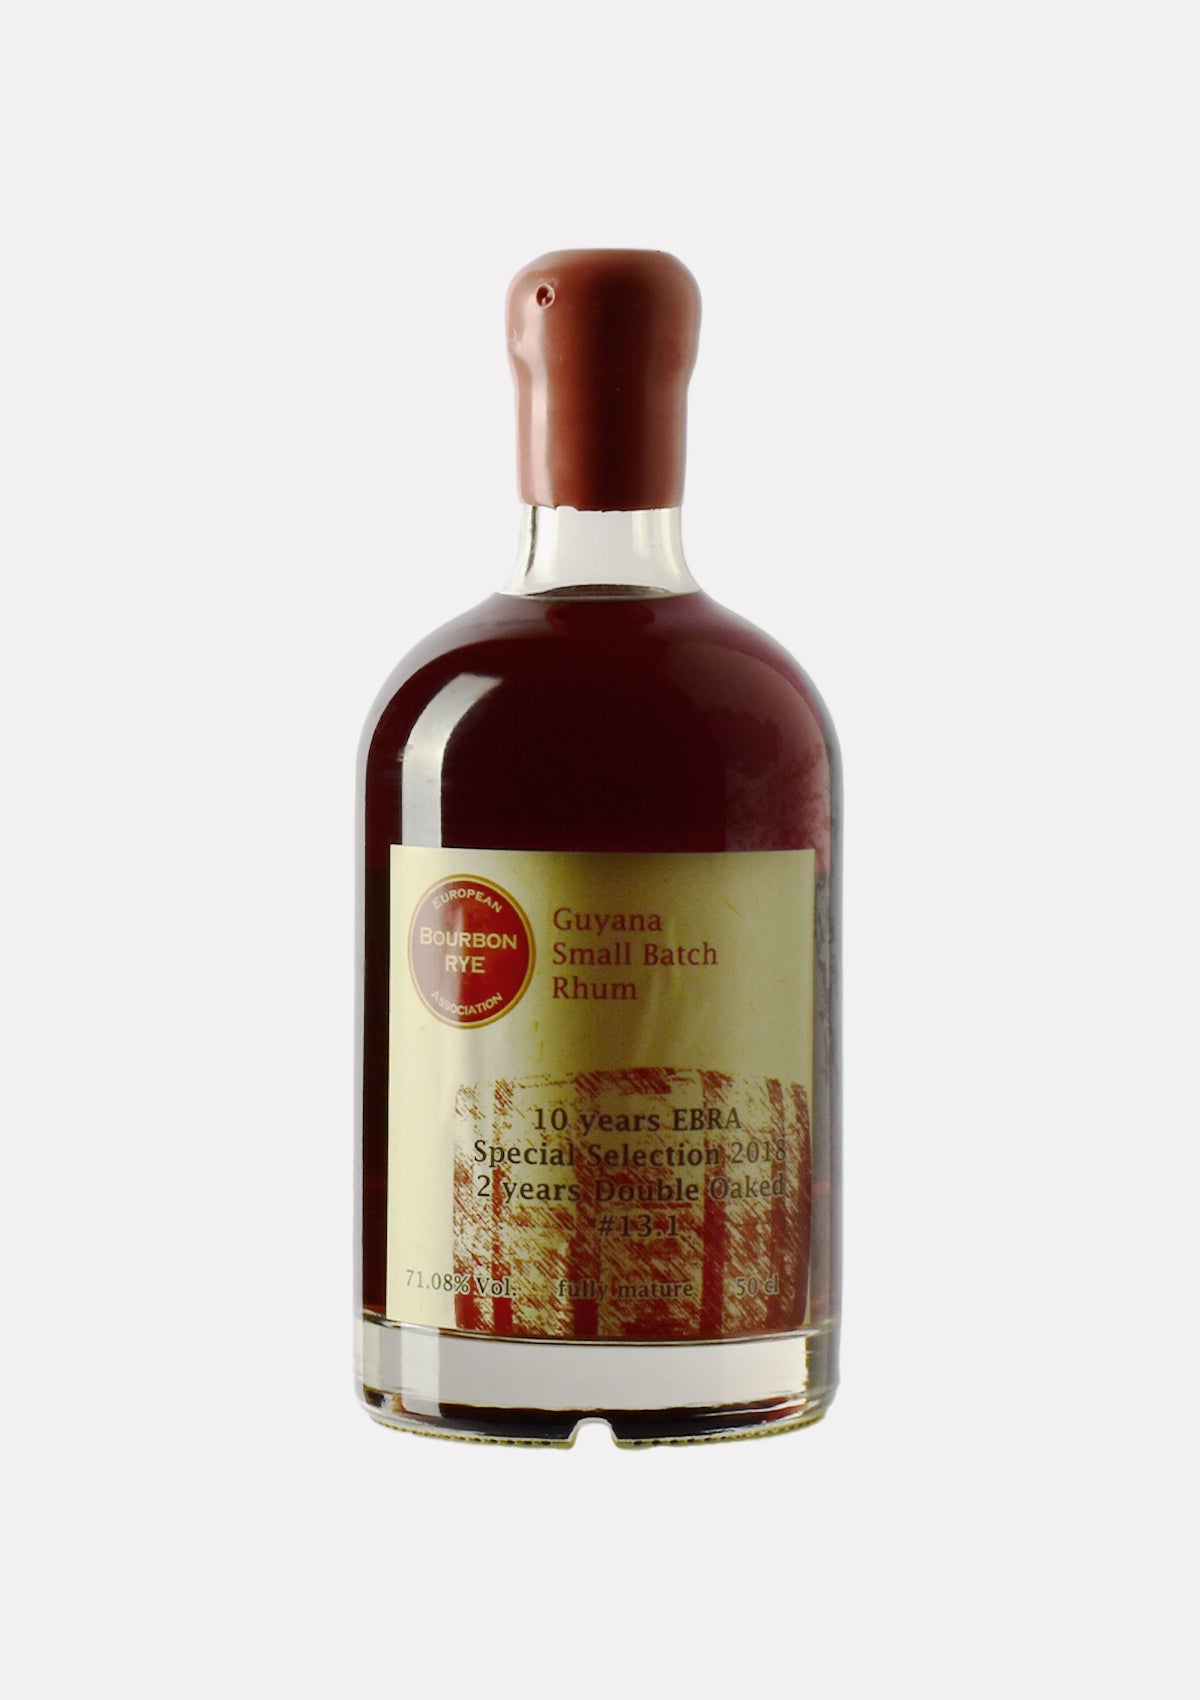 EBRA Rum Guyana 13.1